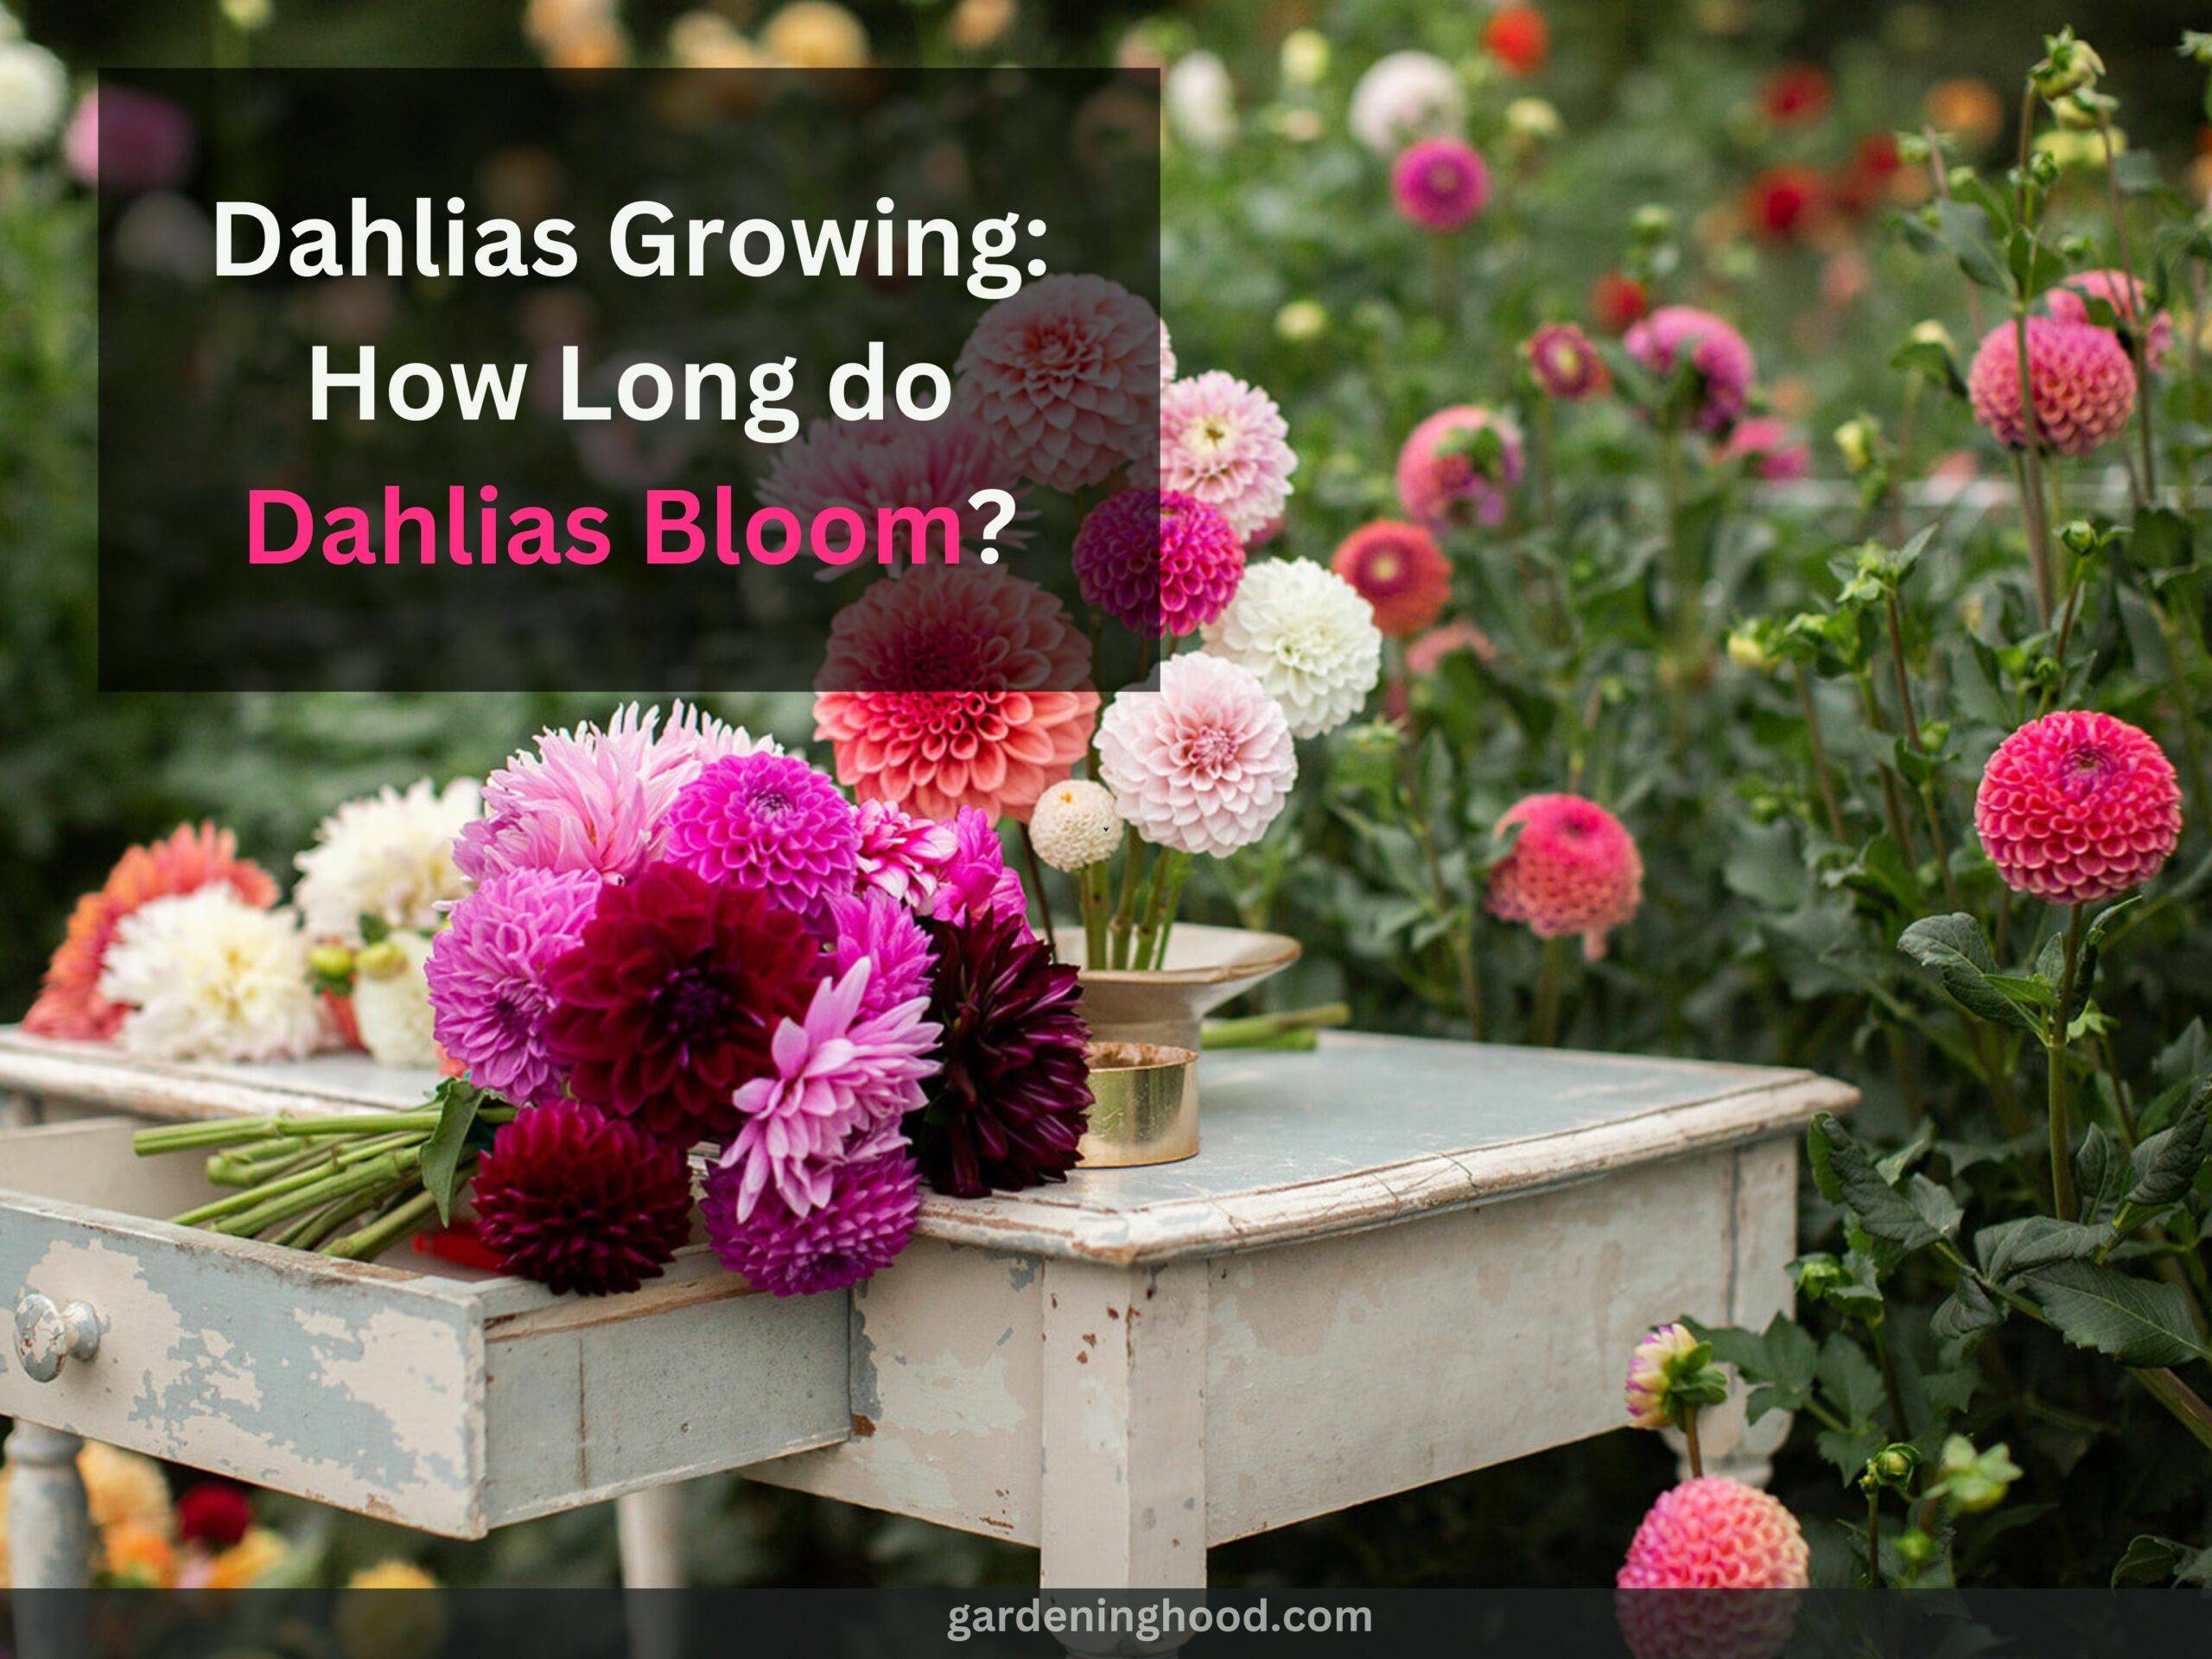 Dahlias Growing: How Long do Dahlias Bloom?